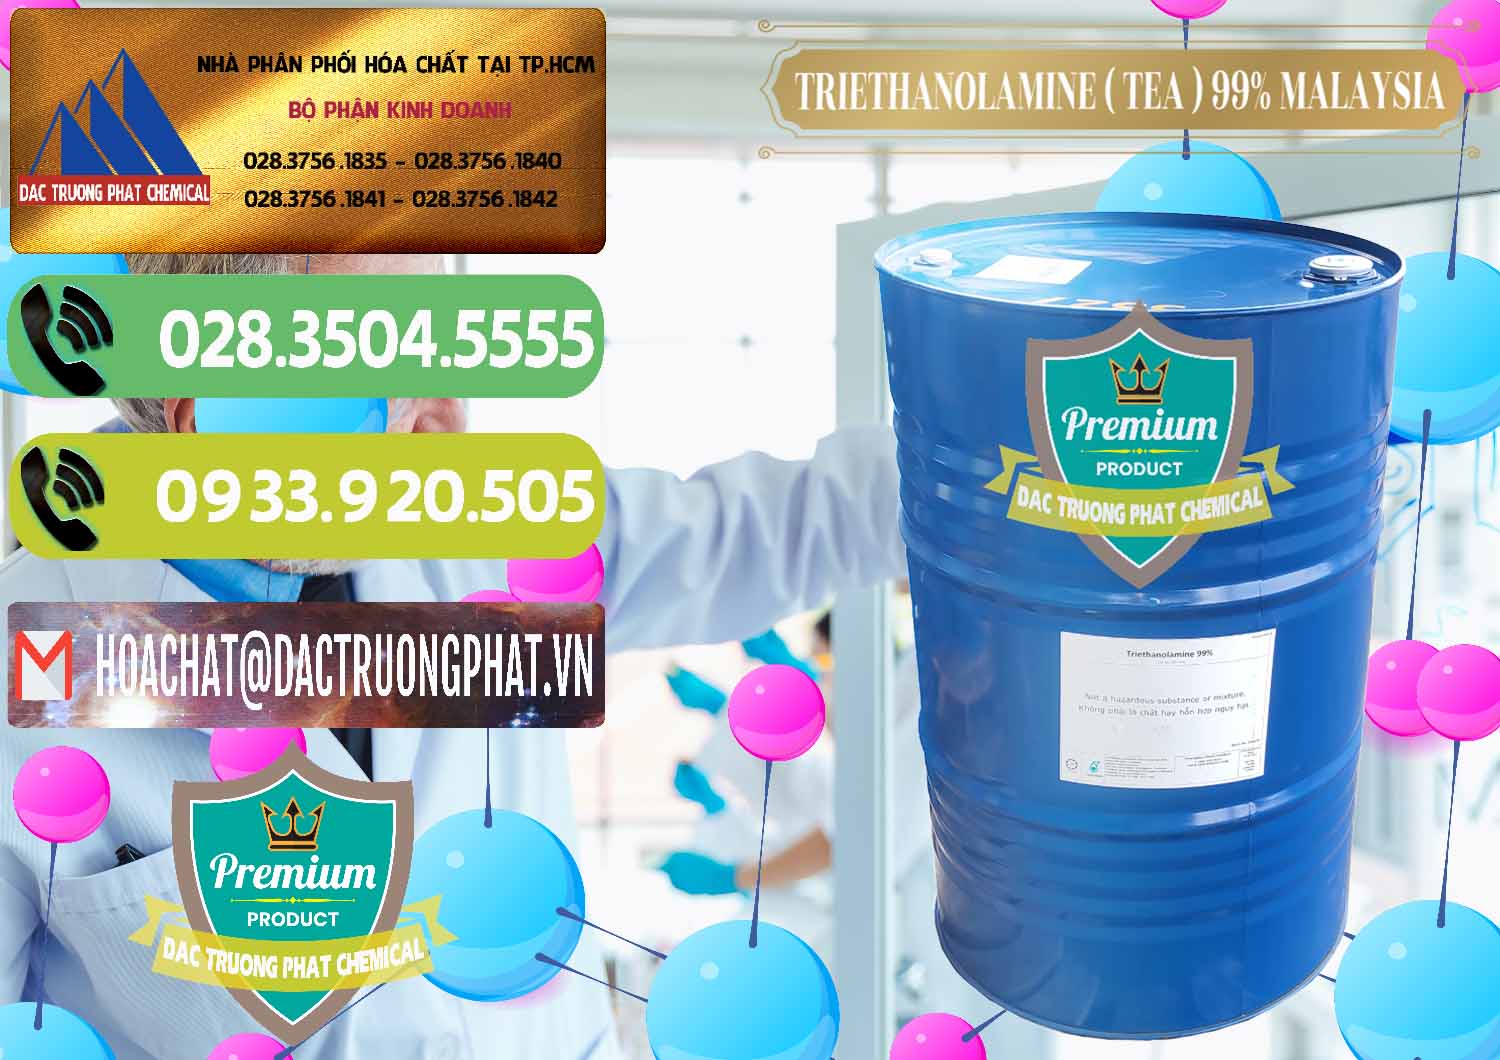 Cty bán ( phân phối ) TEA - Triethanolamine 99% Mã Lai Malaysia - 0323 - Nơi phân phối & kinh doanh hóa chất tại TP.HCM - hoachatmientay.vn